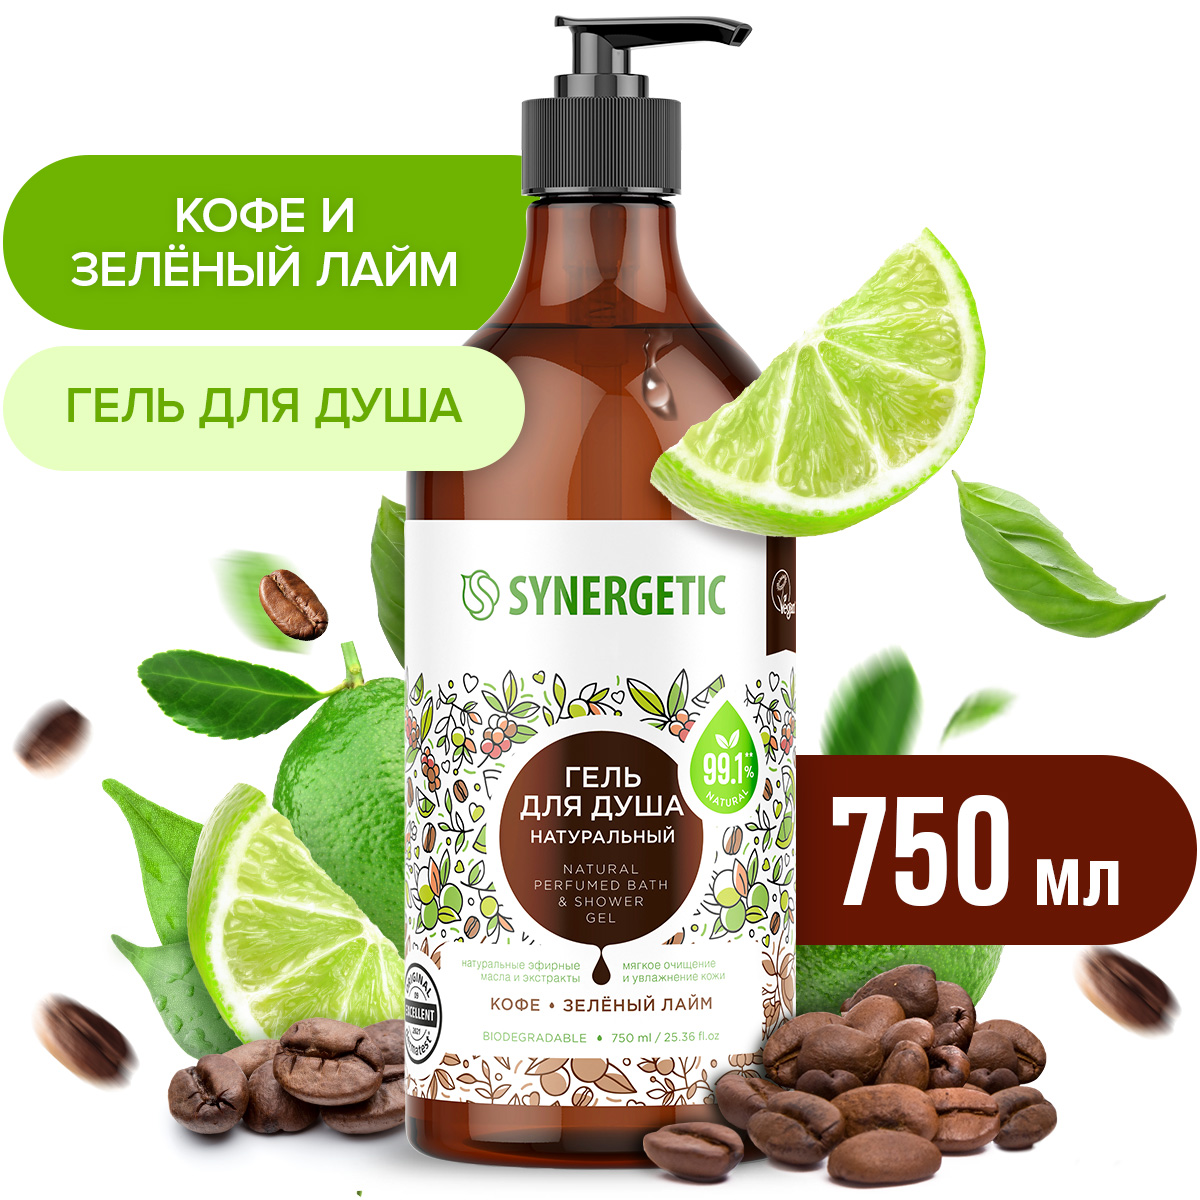 Гель для душа Synergetic натуральный, гипоаллергенный, Кофе и зеленый лайм 750 мл synergetic натуральный кофейный скраб для тела кофе и зеленый лайм 300